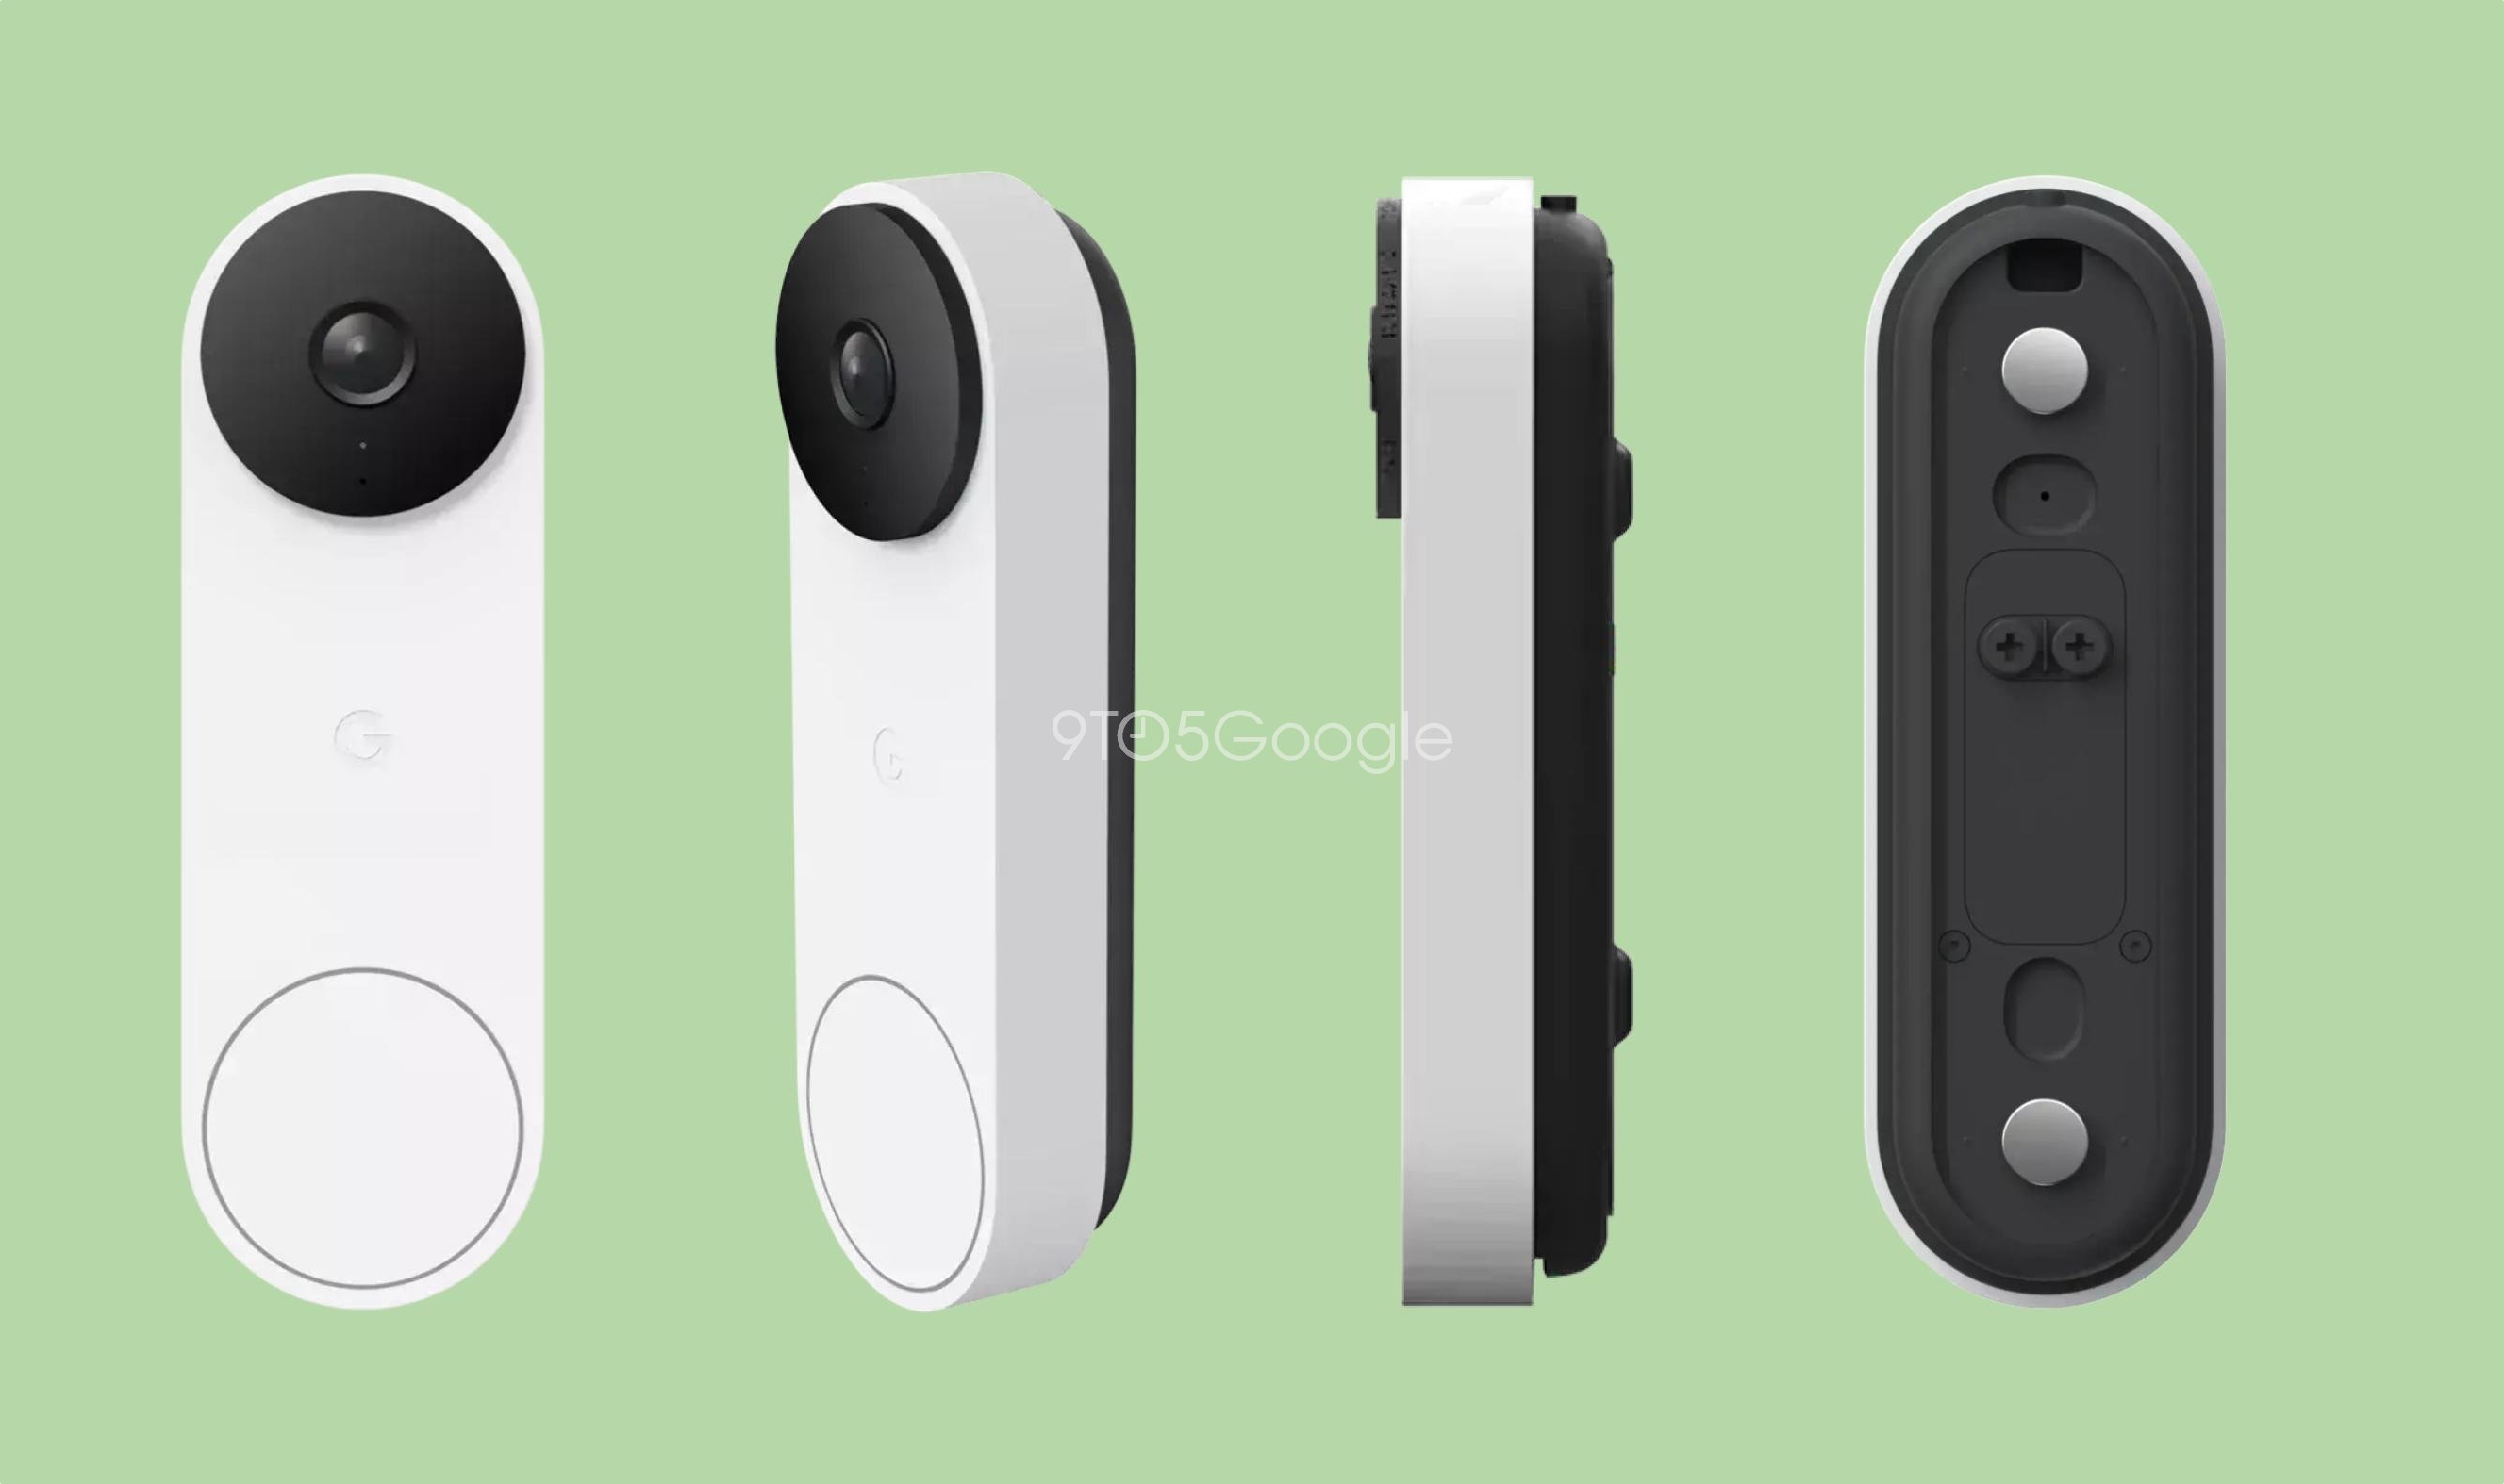 Google va lancer une nouvelle sonnette intelligente Nest Doorbell, l'appareil sera équipé d'une caméra et d'une connexion filaire.